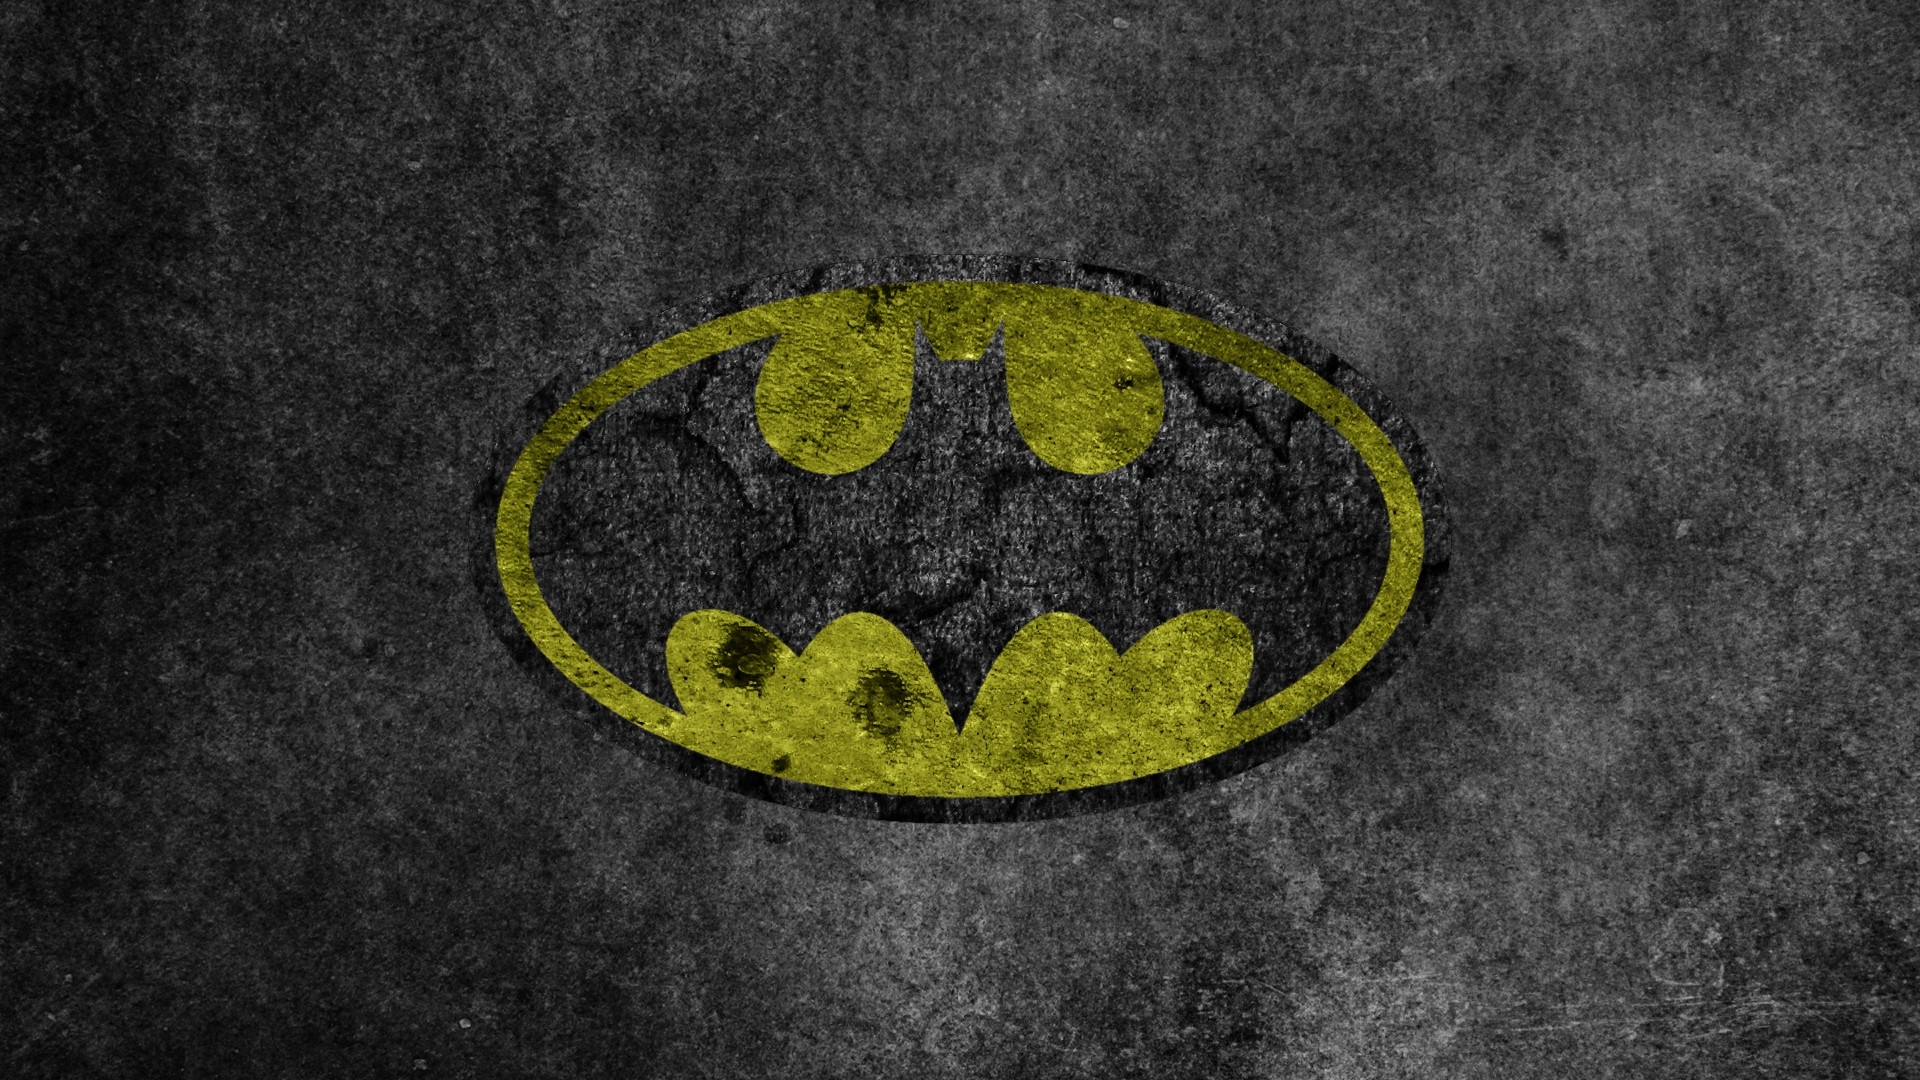 Free Batman Logo Wallpaper, Download Free Batman Logo Wallpaper png images,  Free ClipArts on Clipart Library